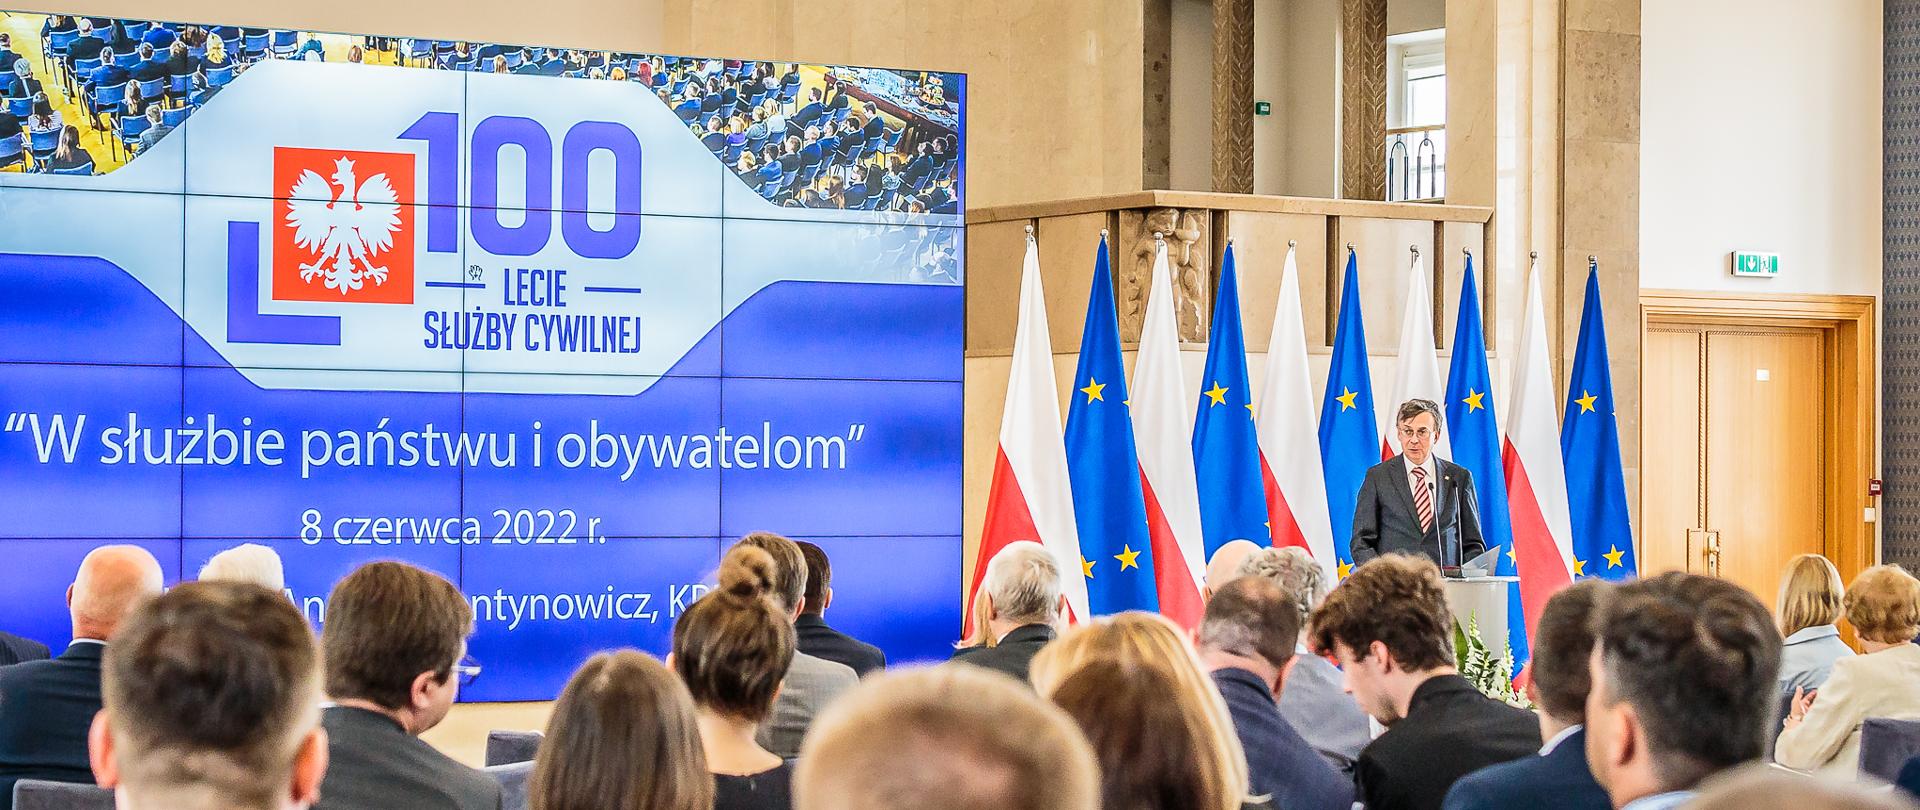 Przemówienie szefa służby cywilnej Dobrosława Dowiata-Urbańskiego